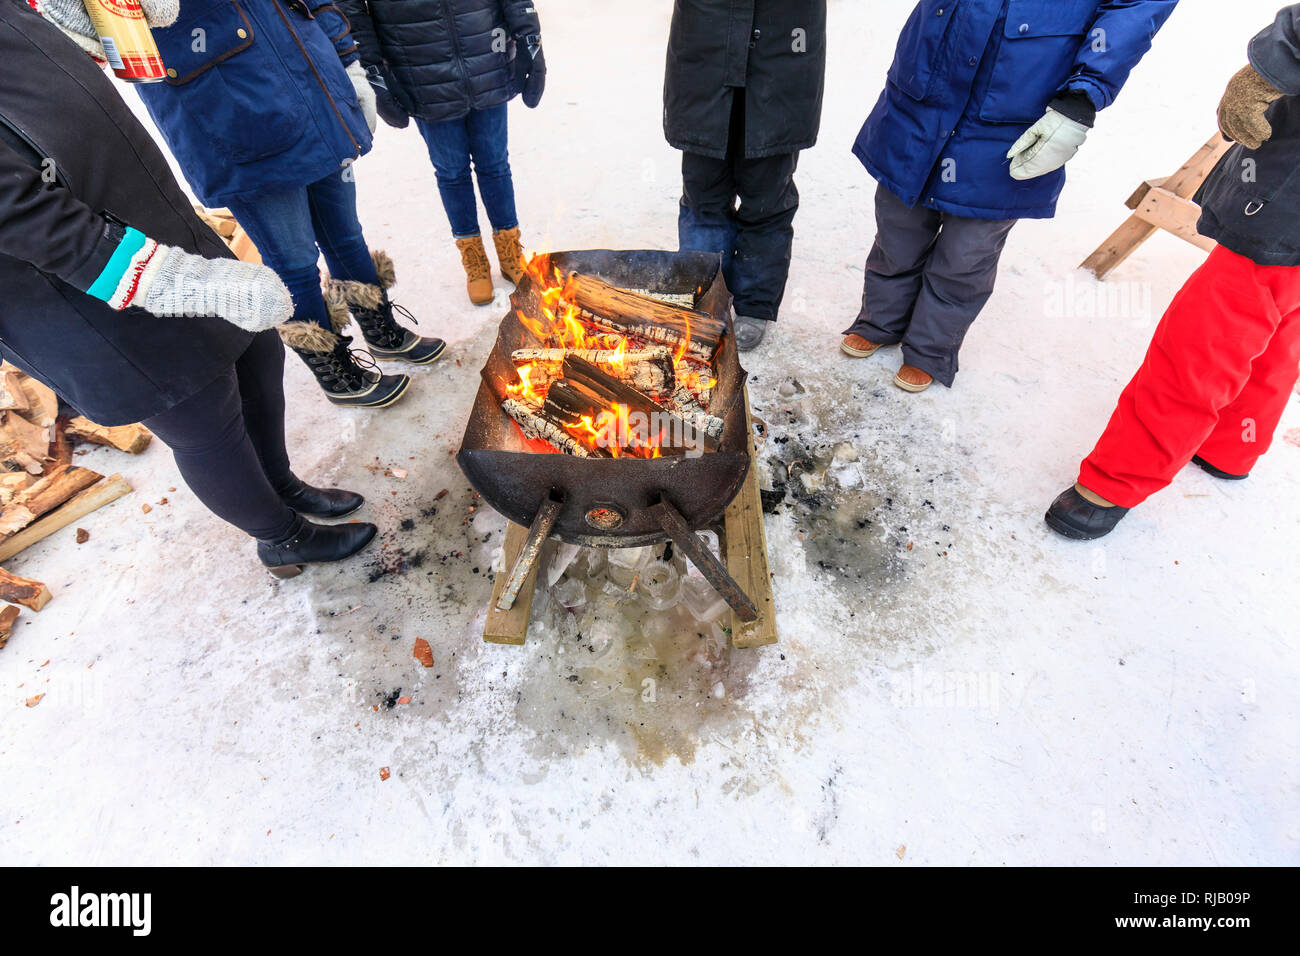 Les gens se réchauffer autour d'un feu de camp en plein air, Winnipeg, Manitoba, Canada. Banque D'Images